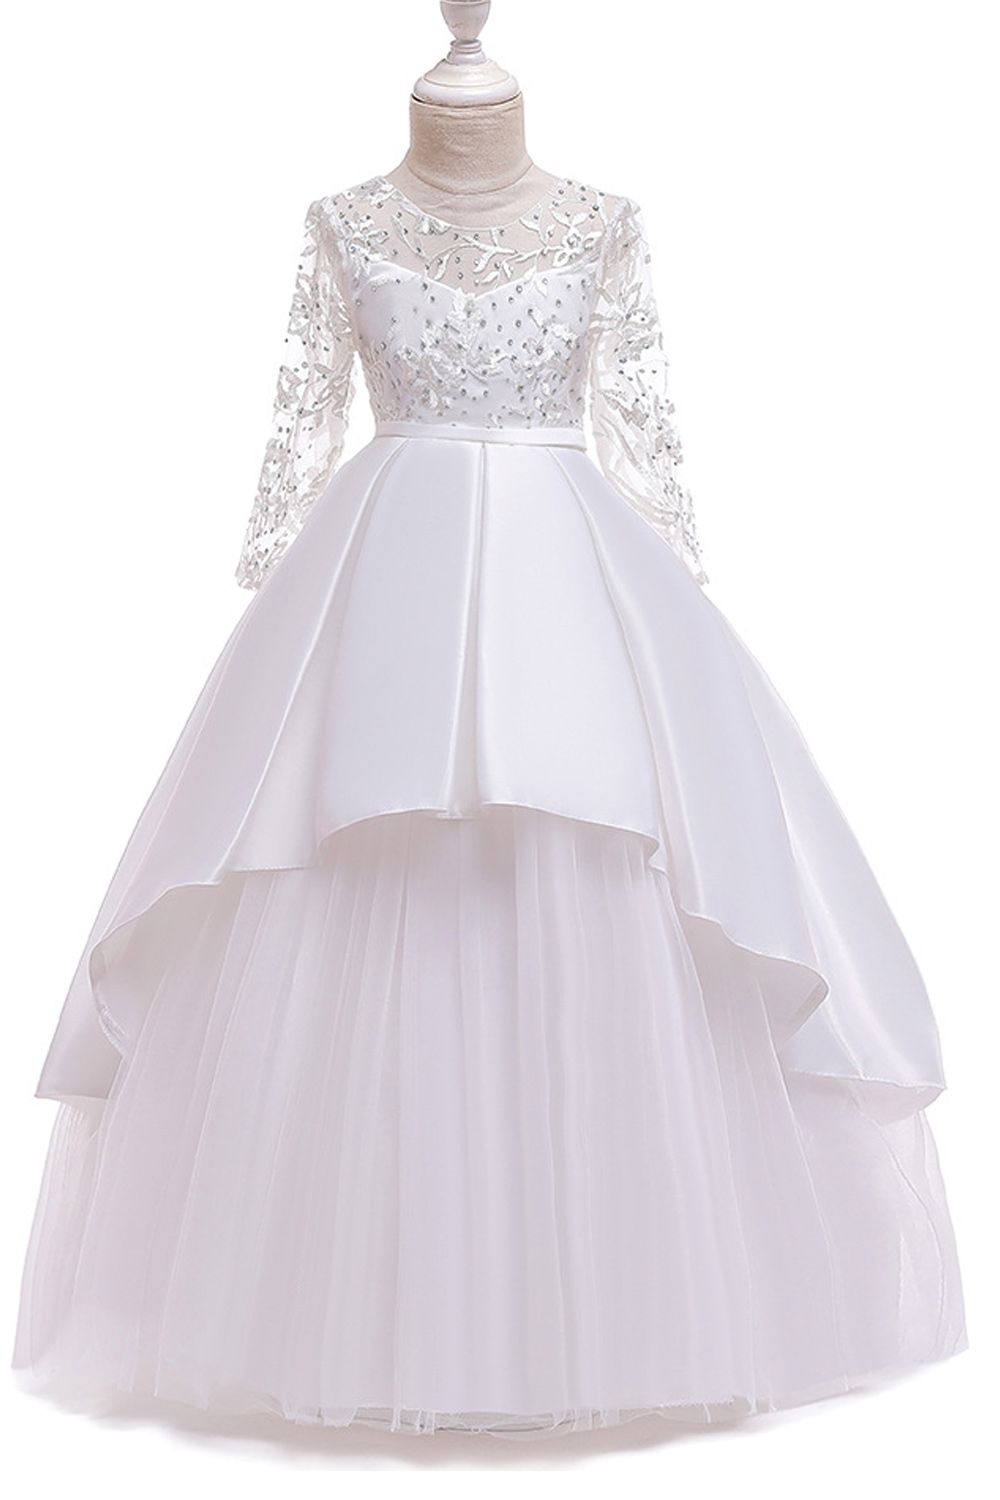 Unomatch Kid Girls Beautiful Princess Style Wedding Dress